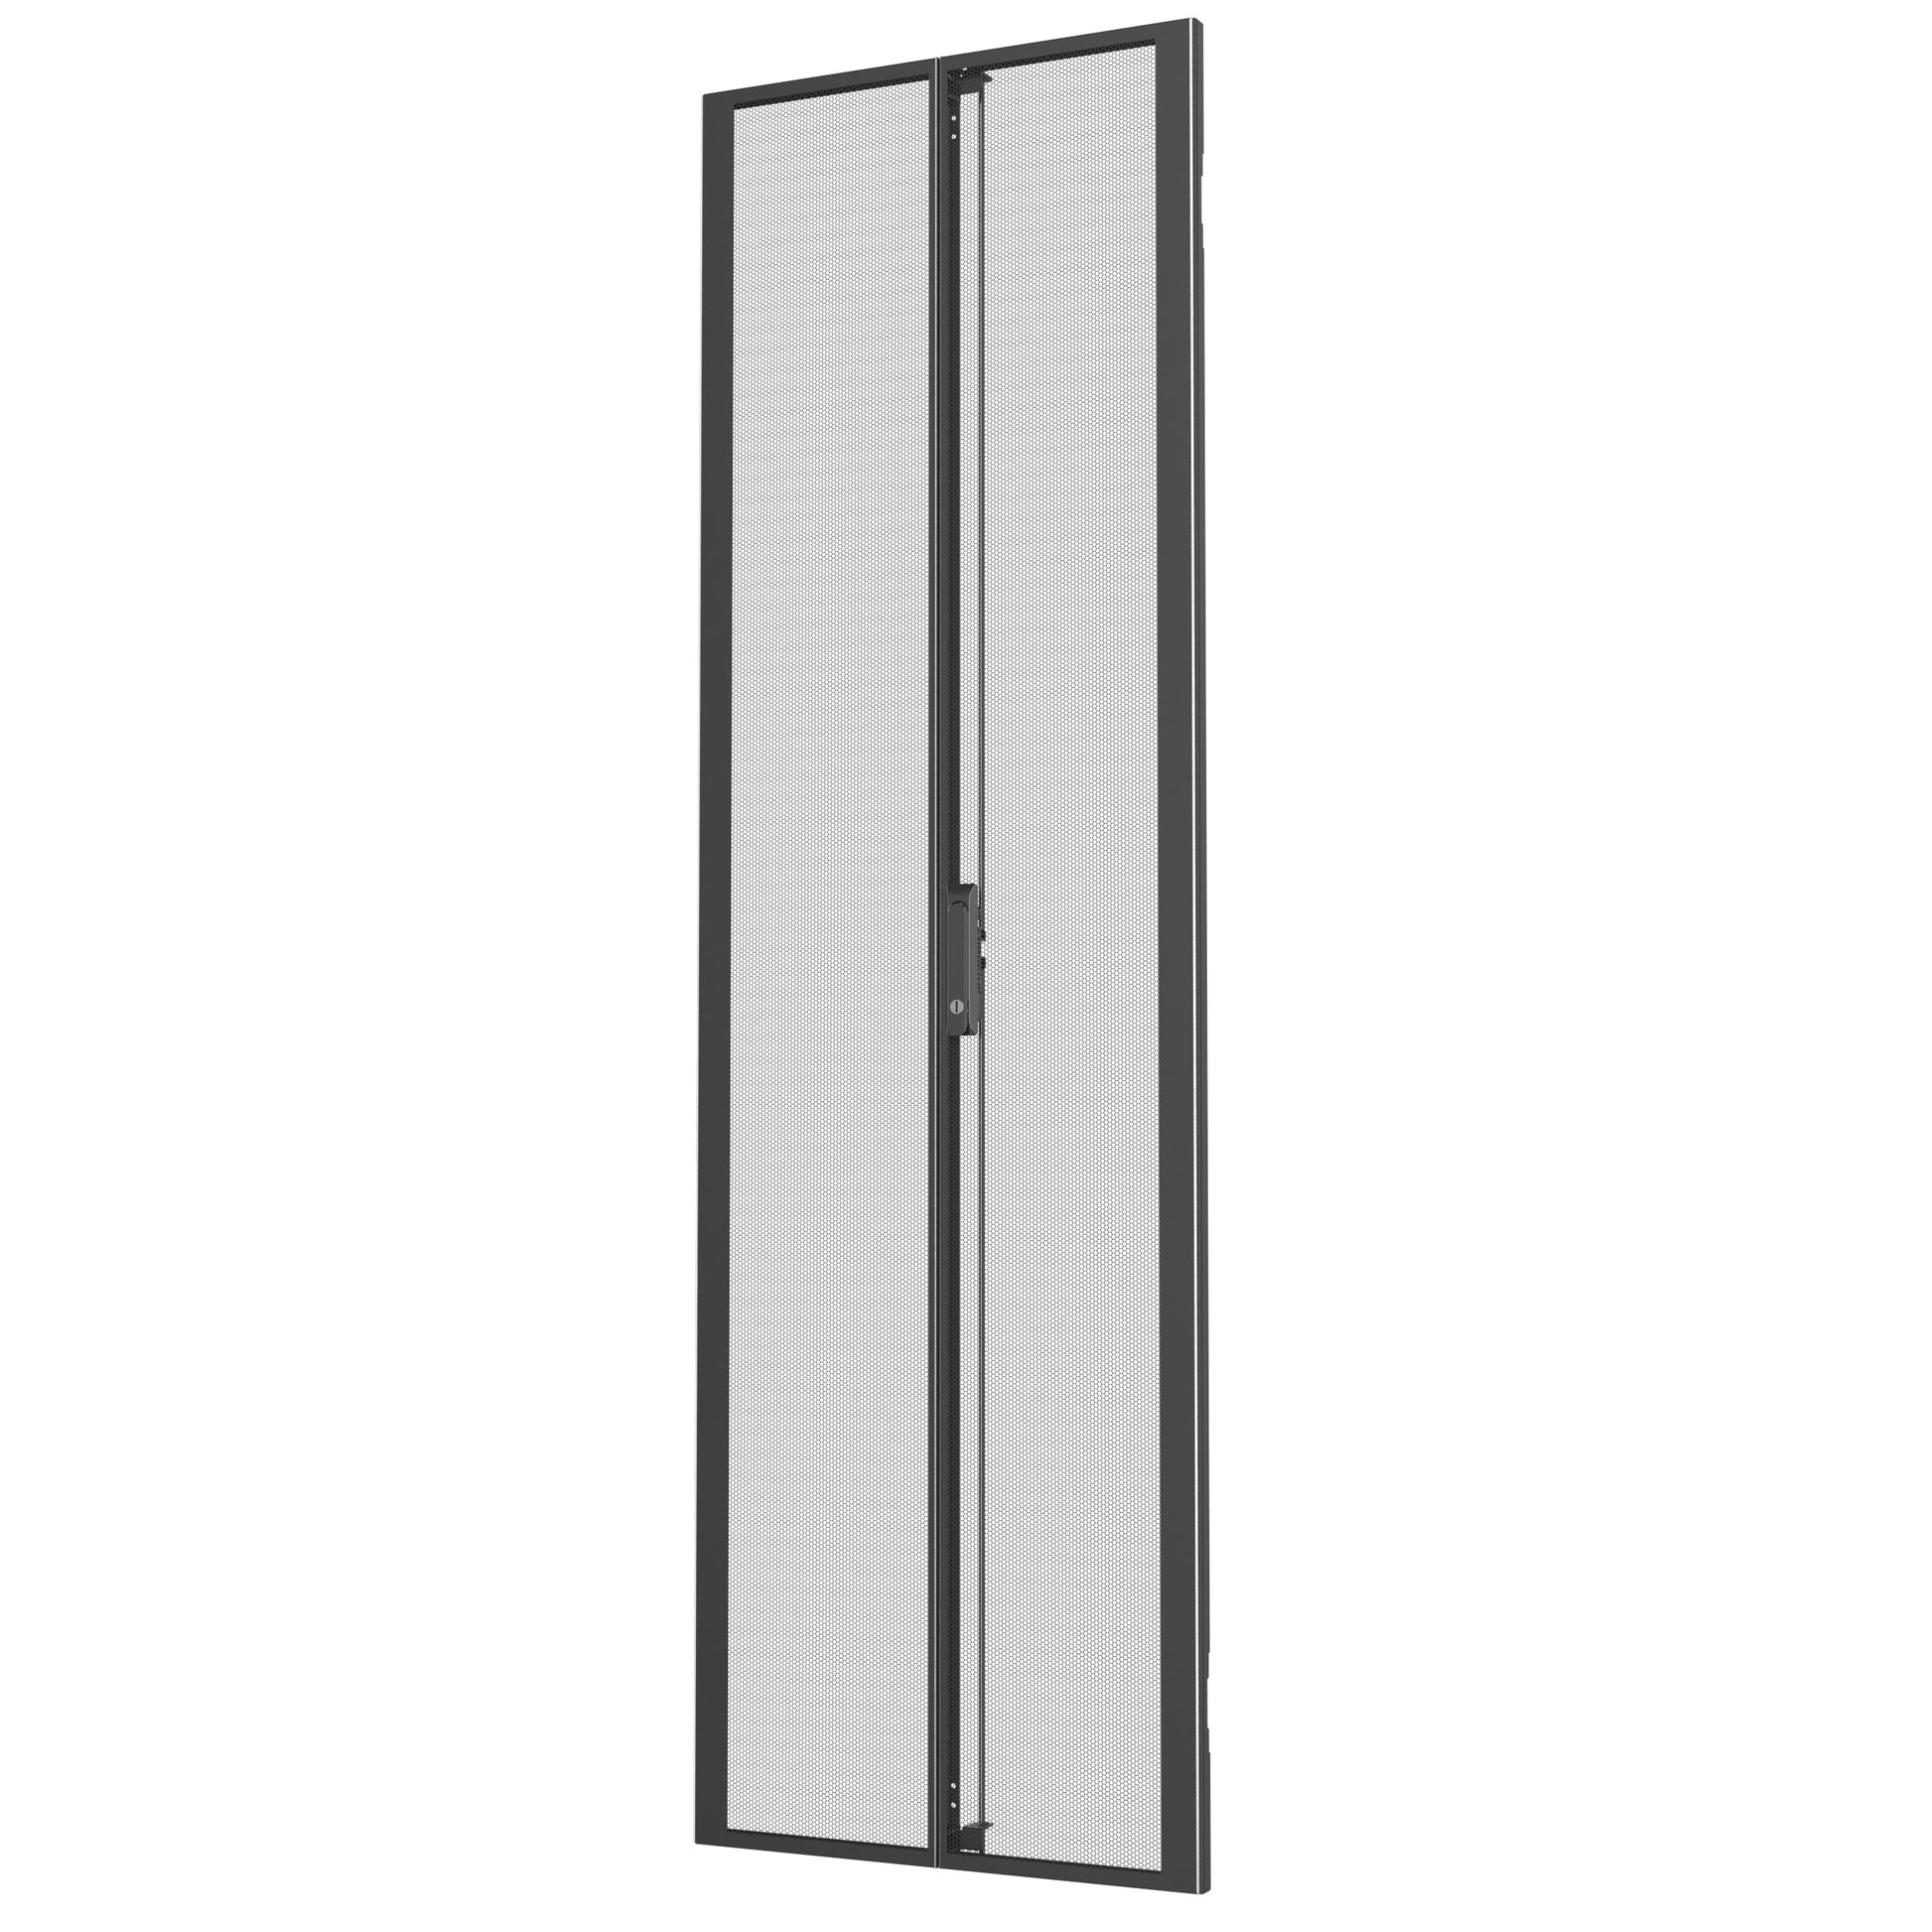 Vertiv Vra6008 Rack Accessory Double Door